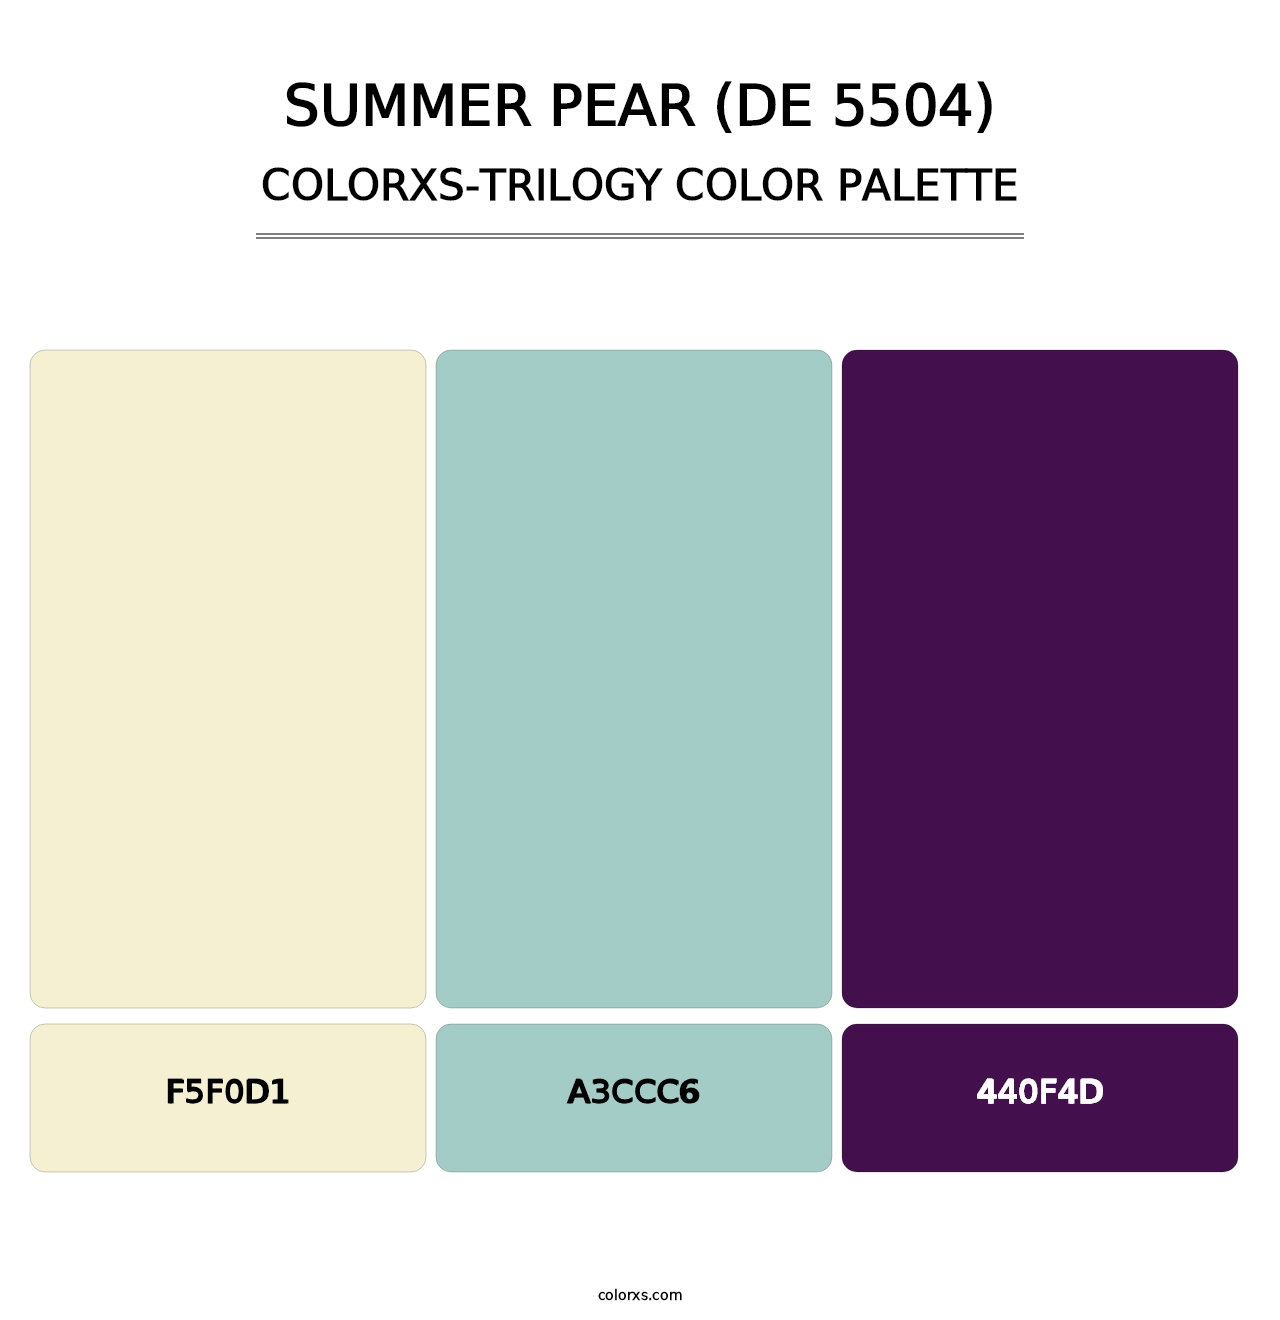 Summer Pear (DE 5504) - Colorxs Trilogy Palette